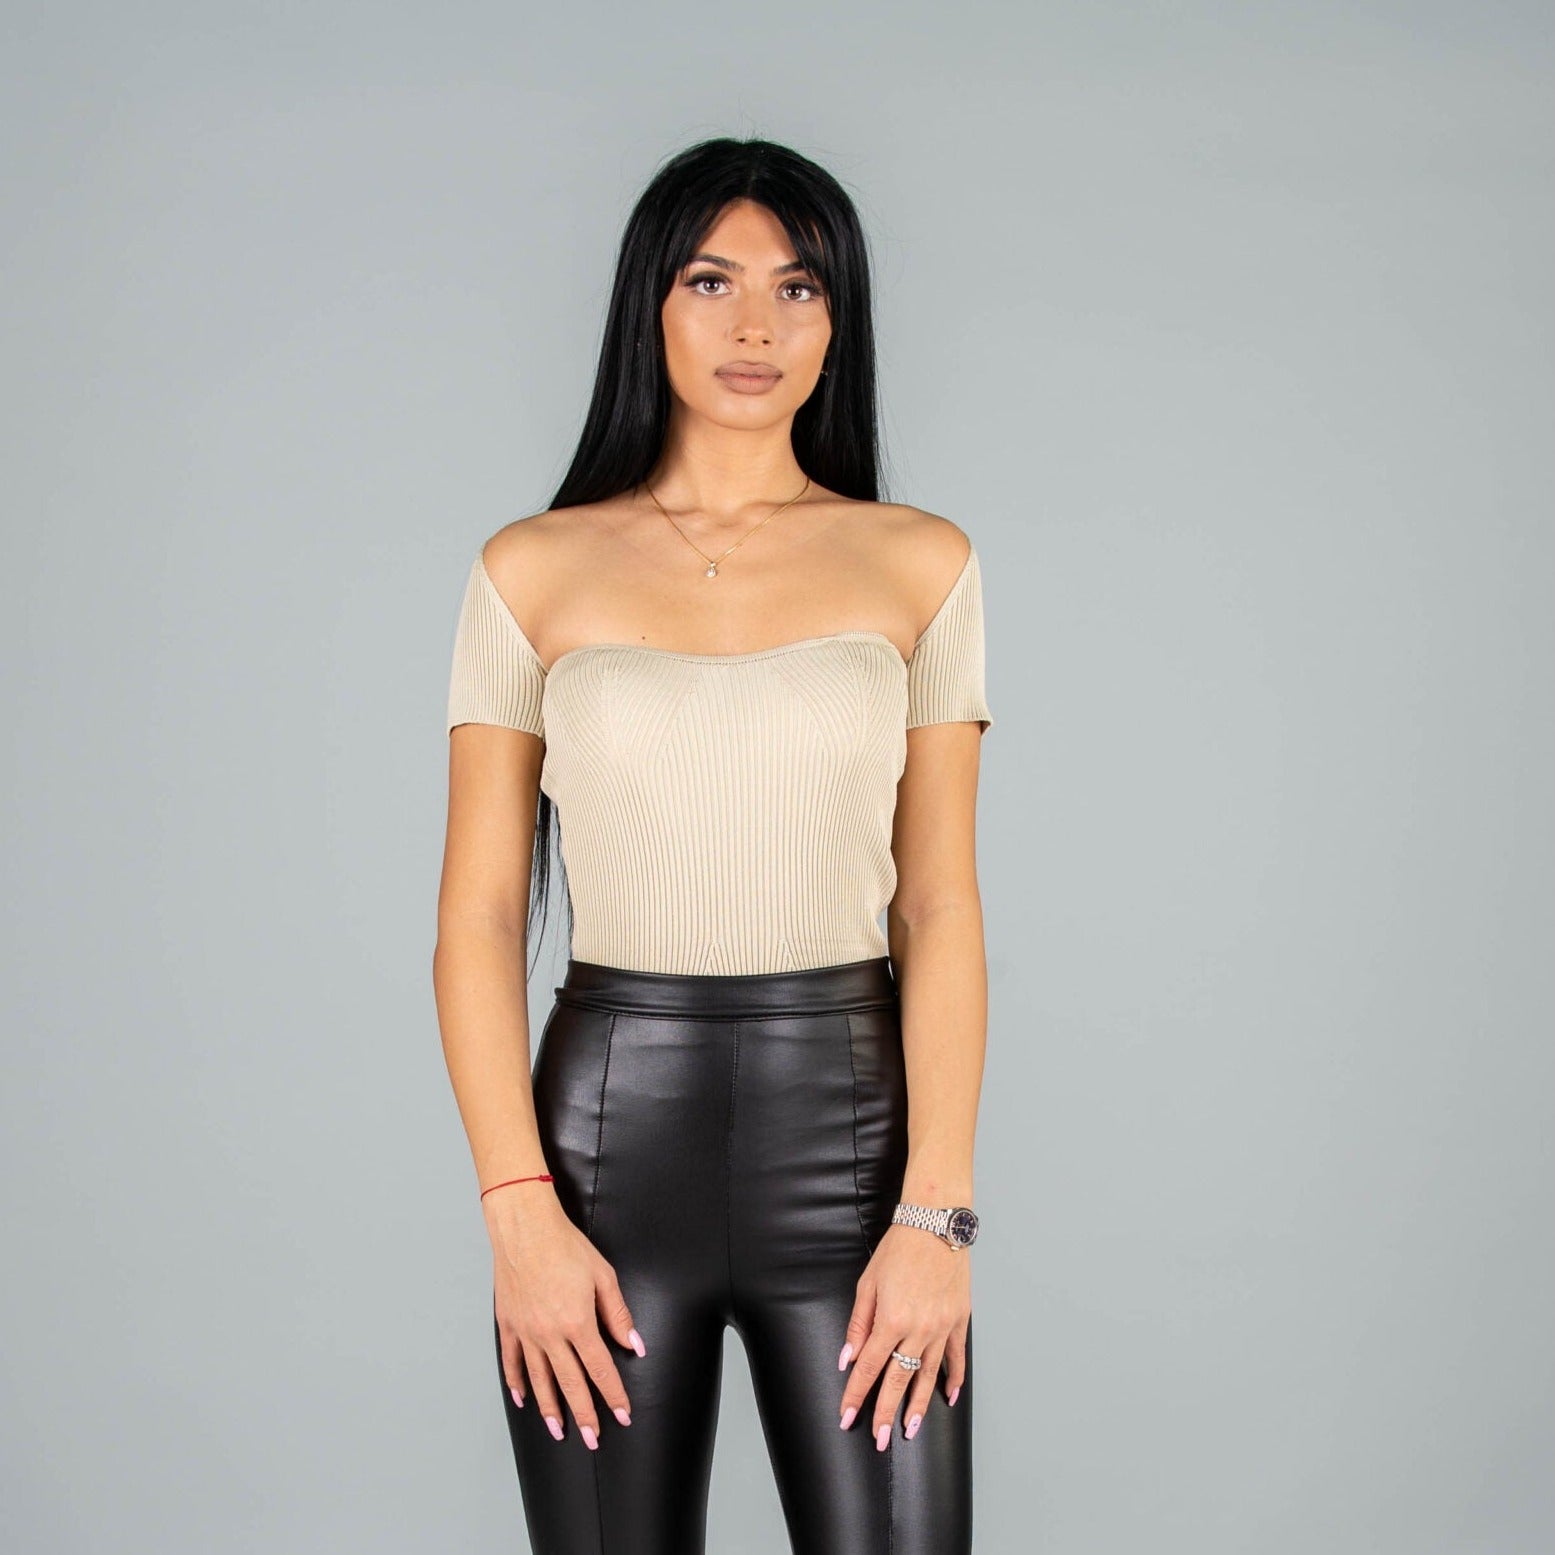 Дамска блуза CORSET  https://bvseductive.com/products/дамска-блуза-corset-4  100 % вискоза стилна дамска блуза в бежов цвят с изчистен класически дизайн&nbsp; секси деколте и къс ръкав&nbsp; чудесен избор за модерна визия